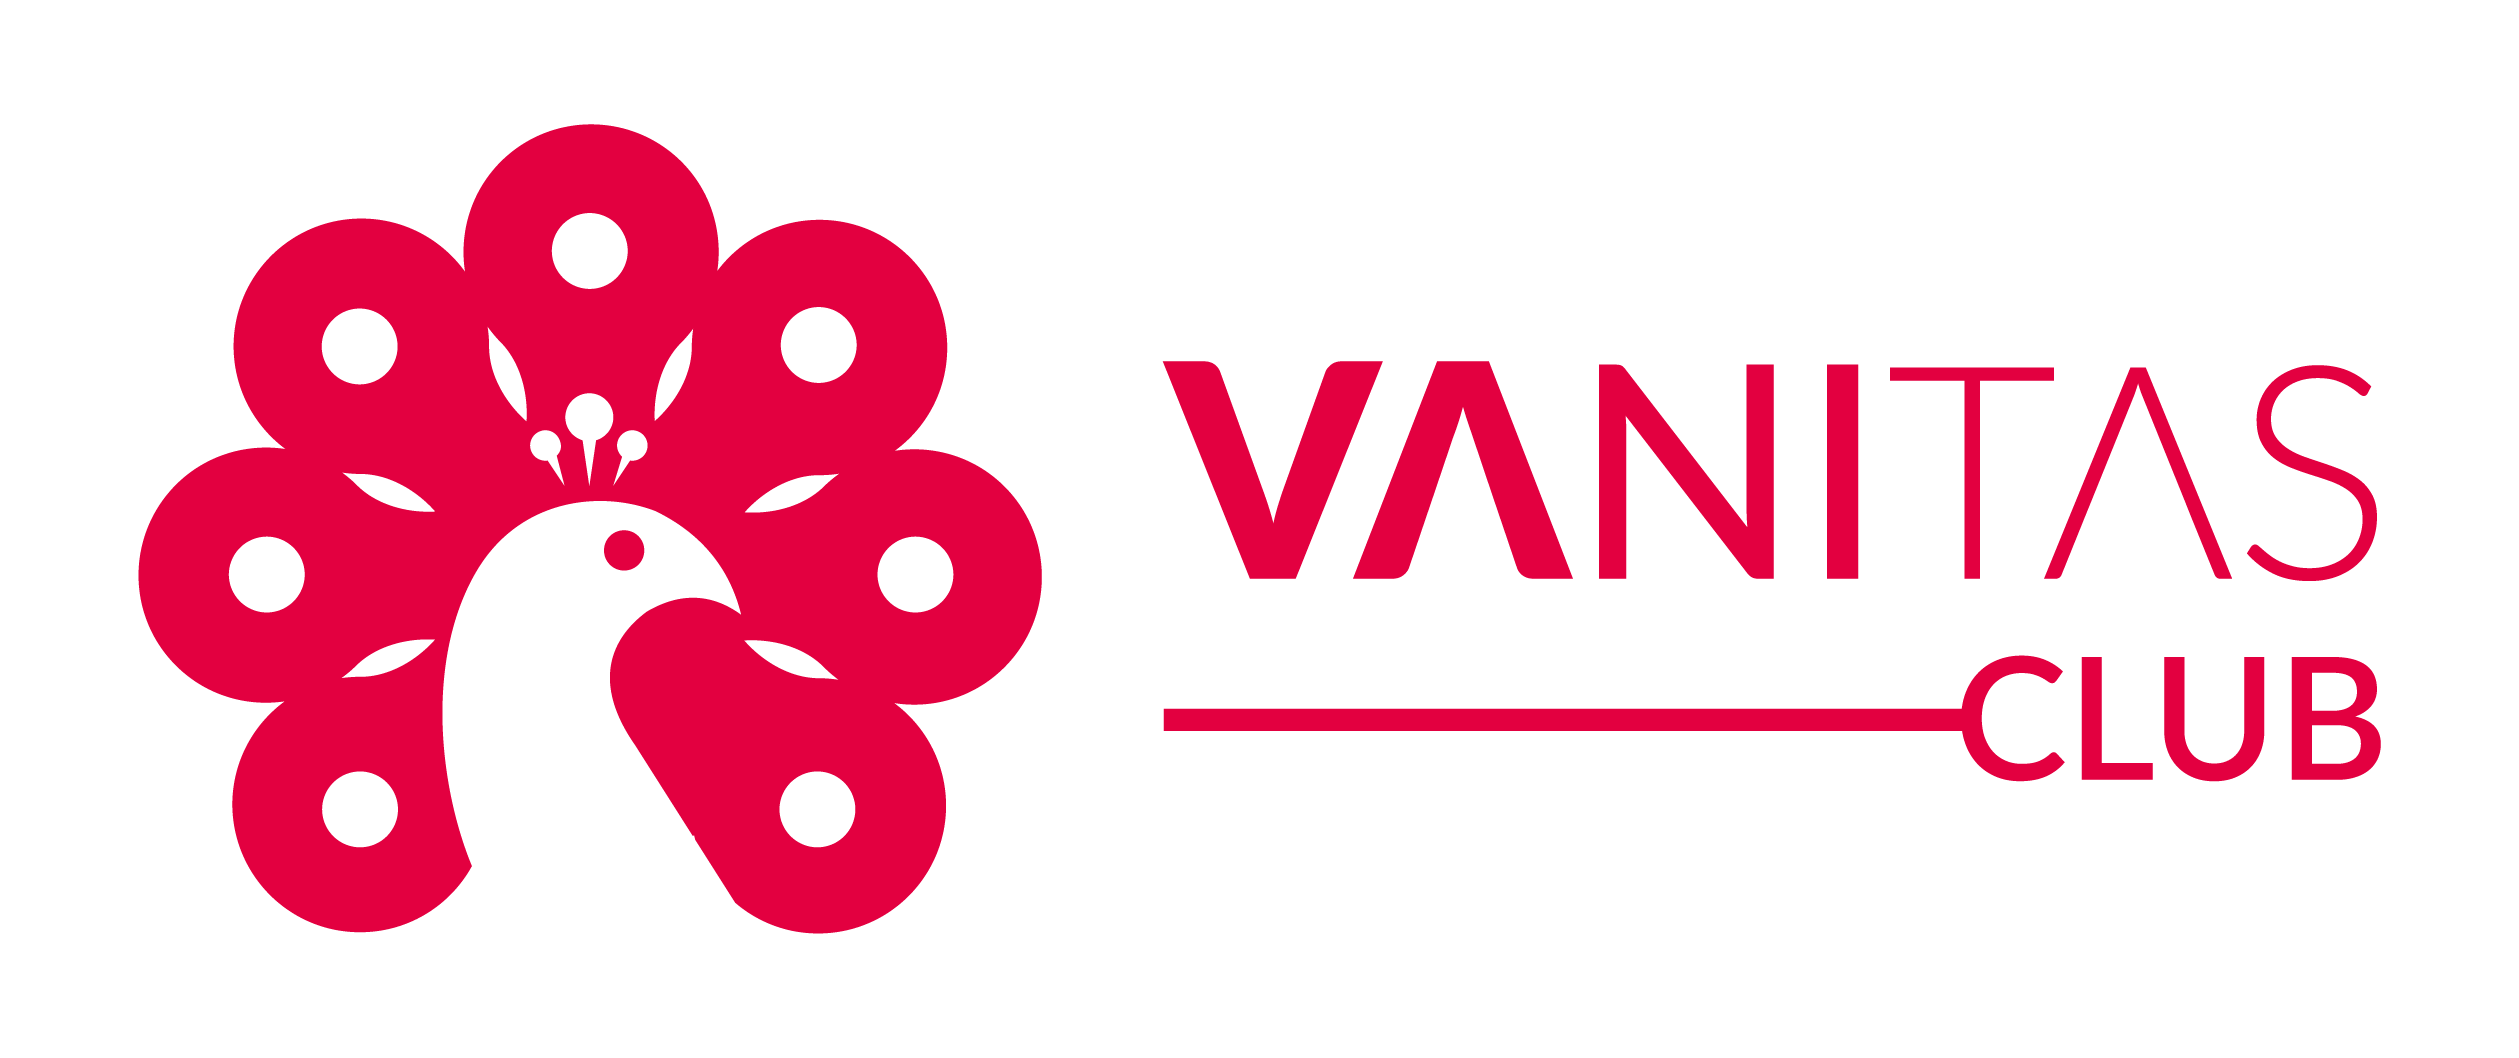 (c) Vanitasclub.org